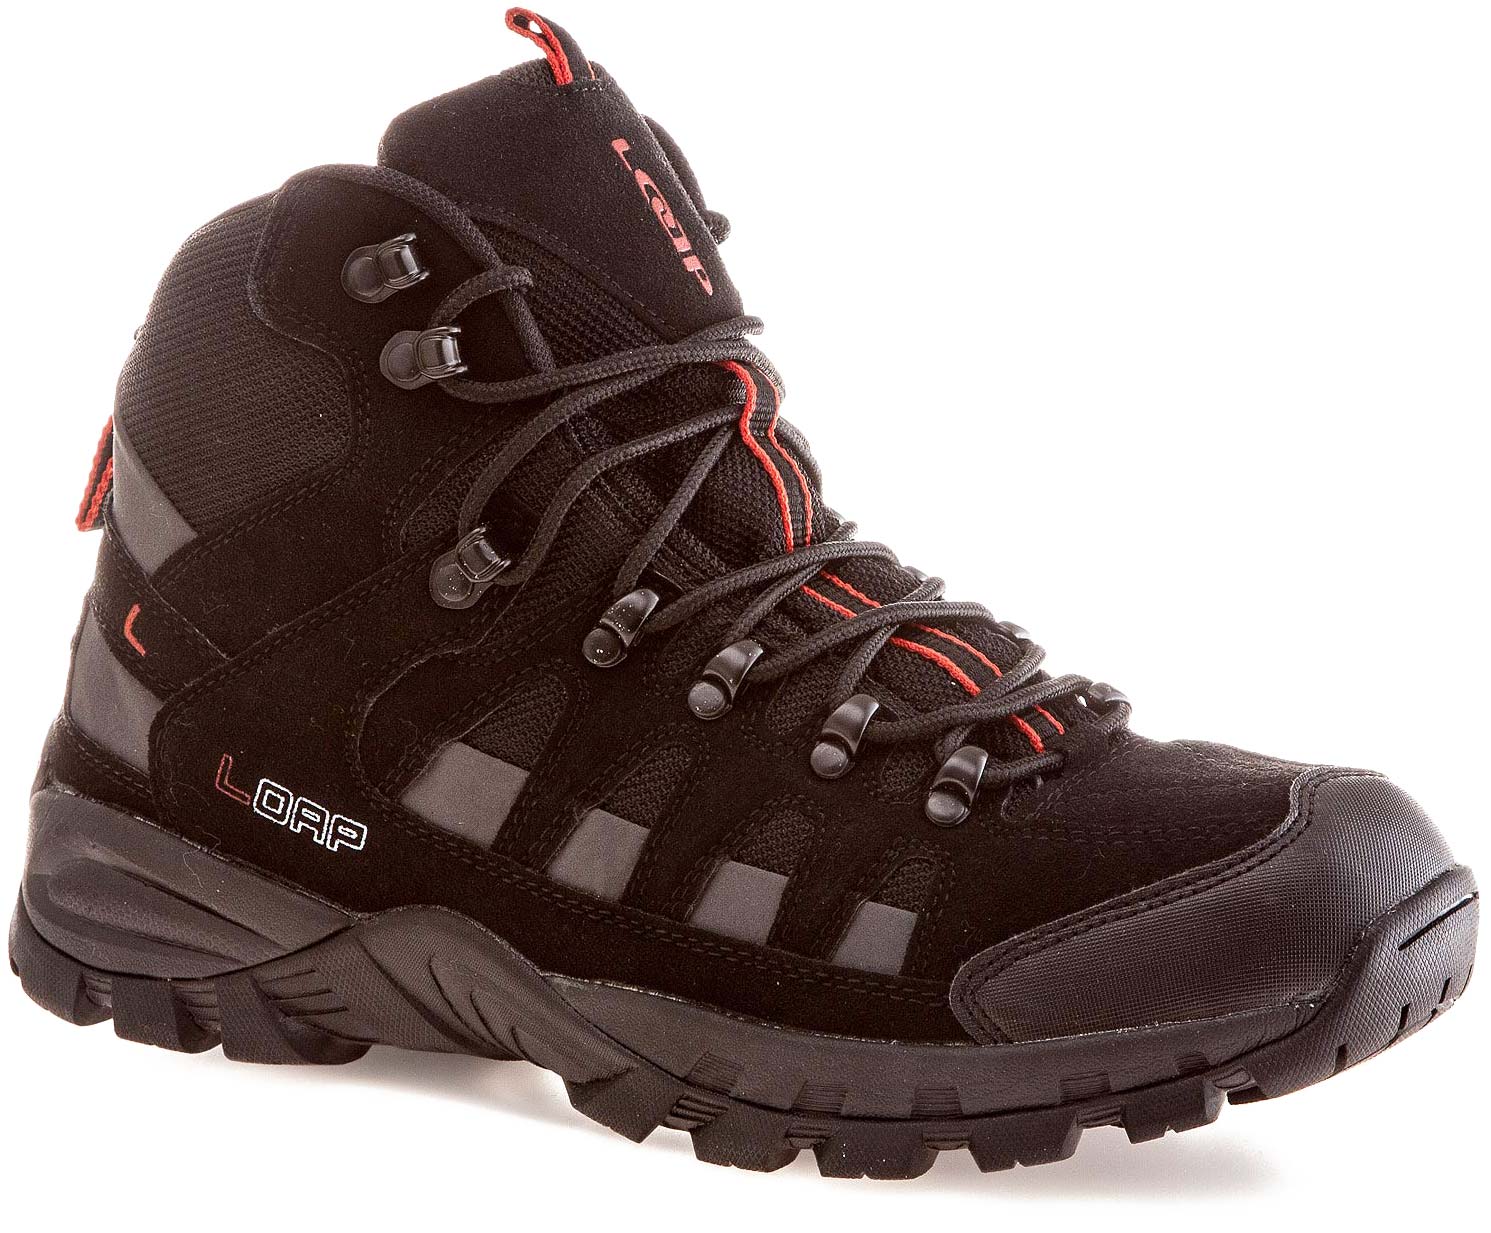 Men’s trekking shoes